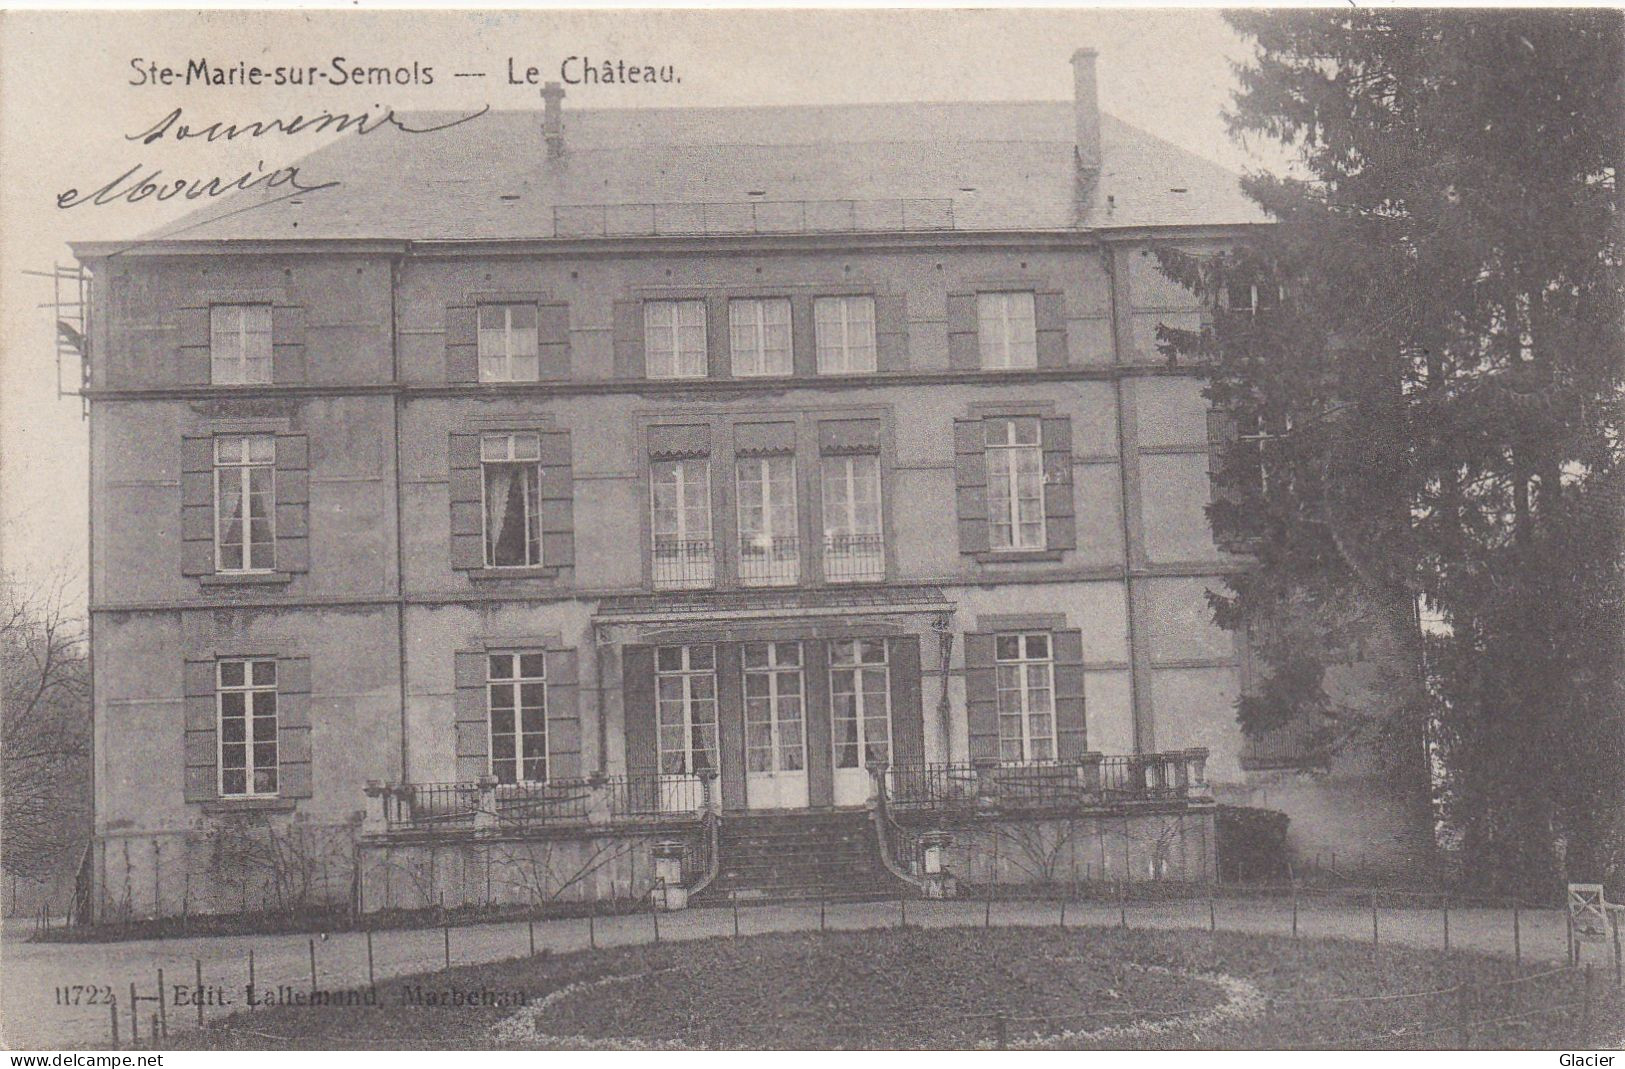 Ste Marie-sur-Semois - Le Château - 11722 Edit. Lallemand, Marbehan - Etalle